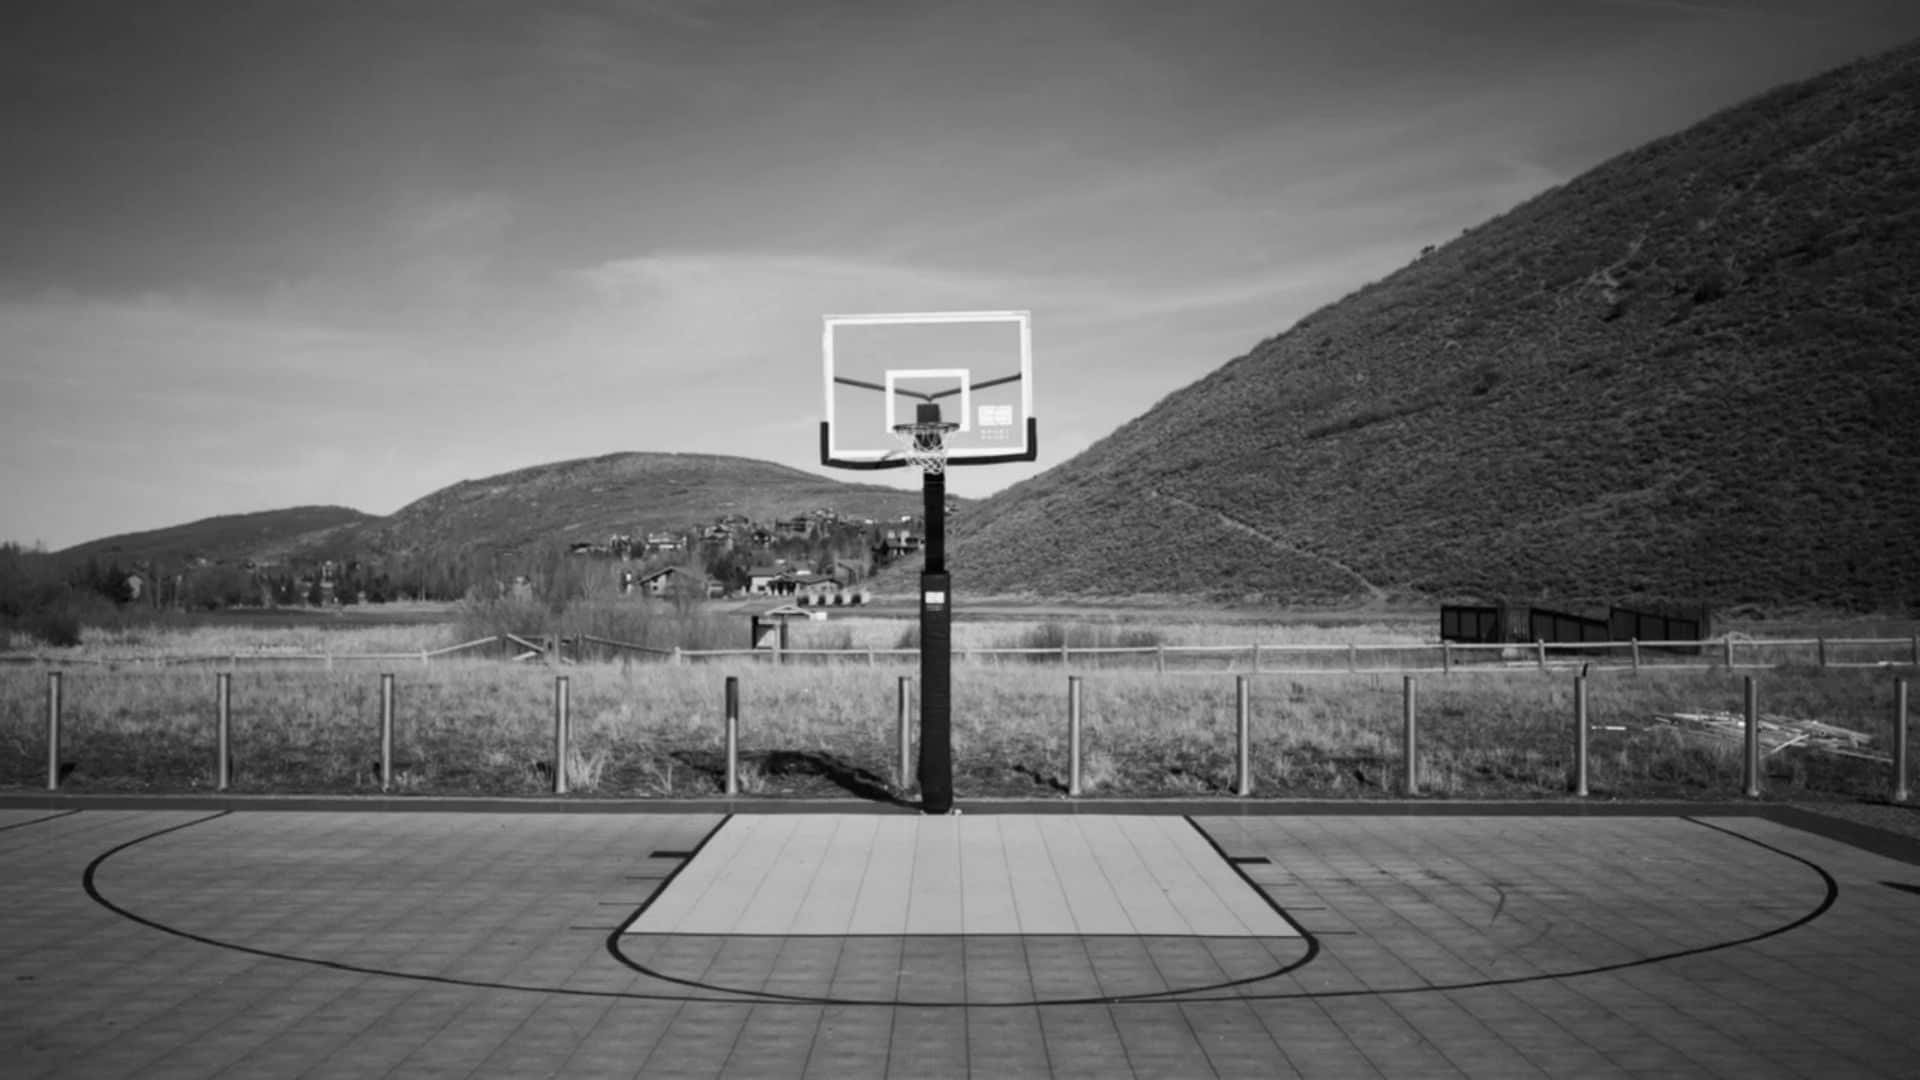 Unavista Di Un Campo Da Basket Appena Dipinto, Che Invita Giocatori Da Tutto Il Mondo.